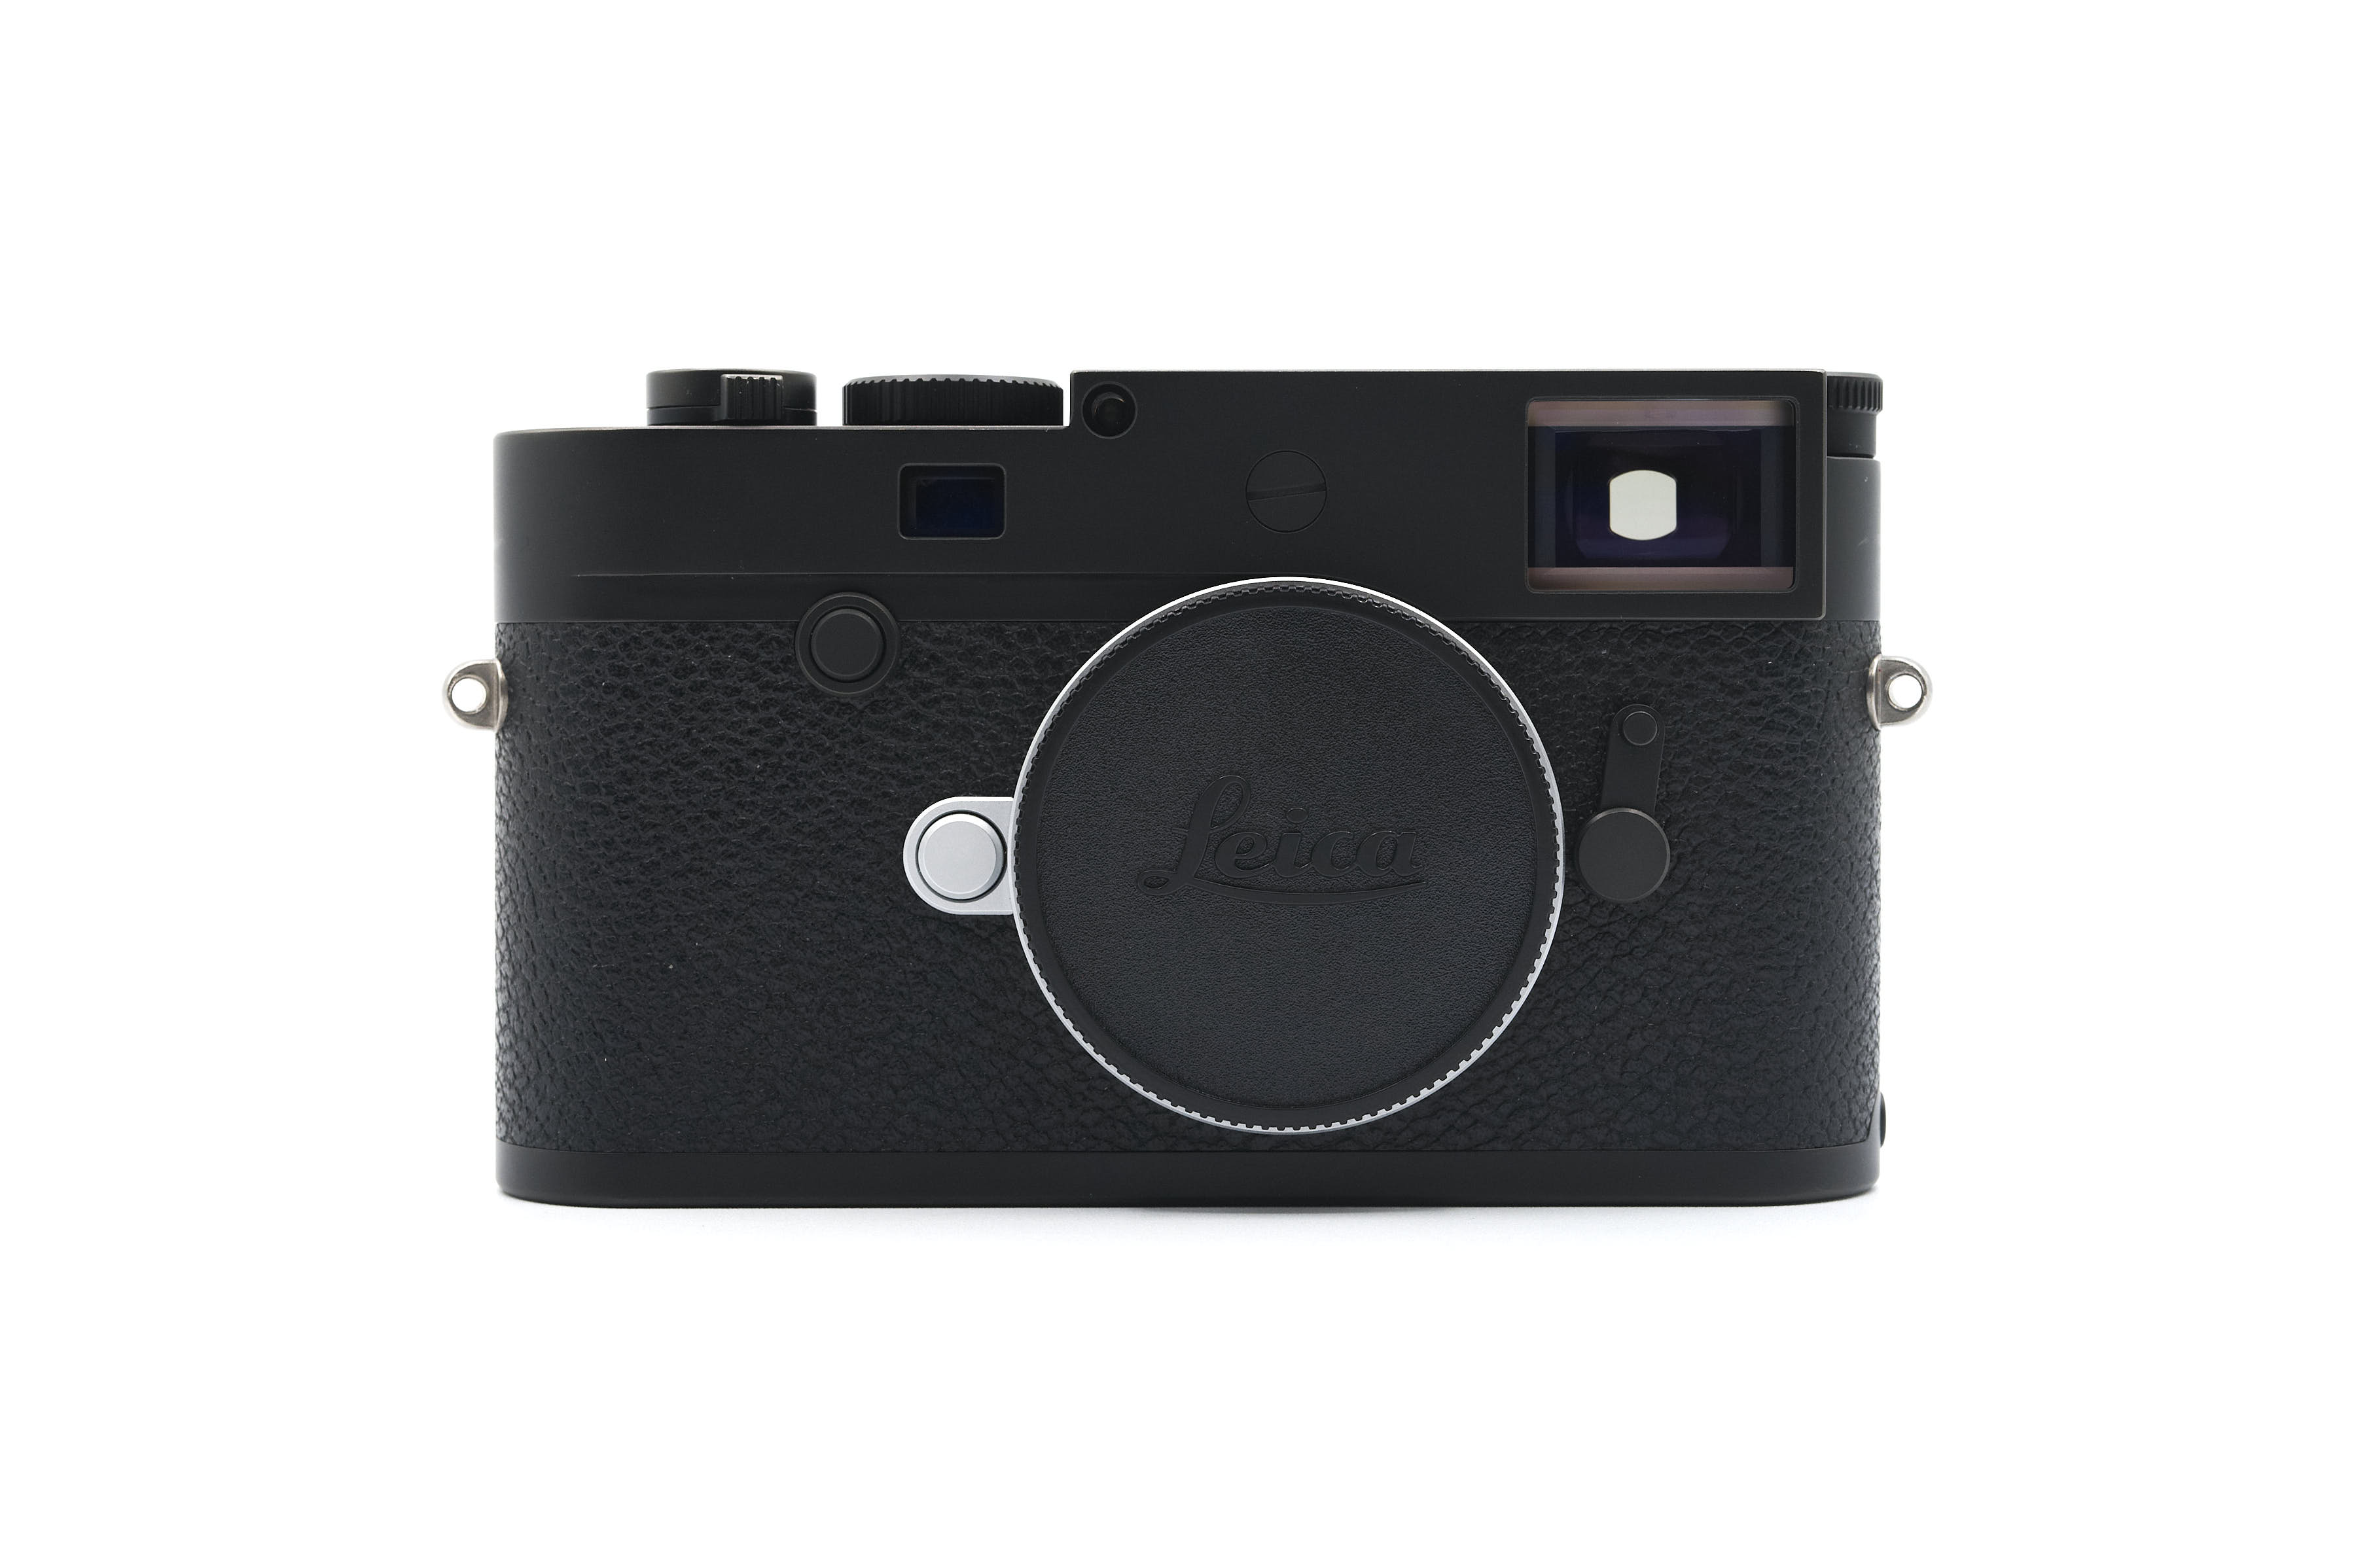 Leica M10-P black 20021